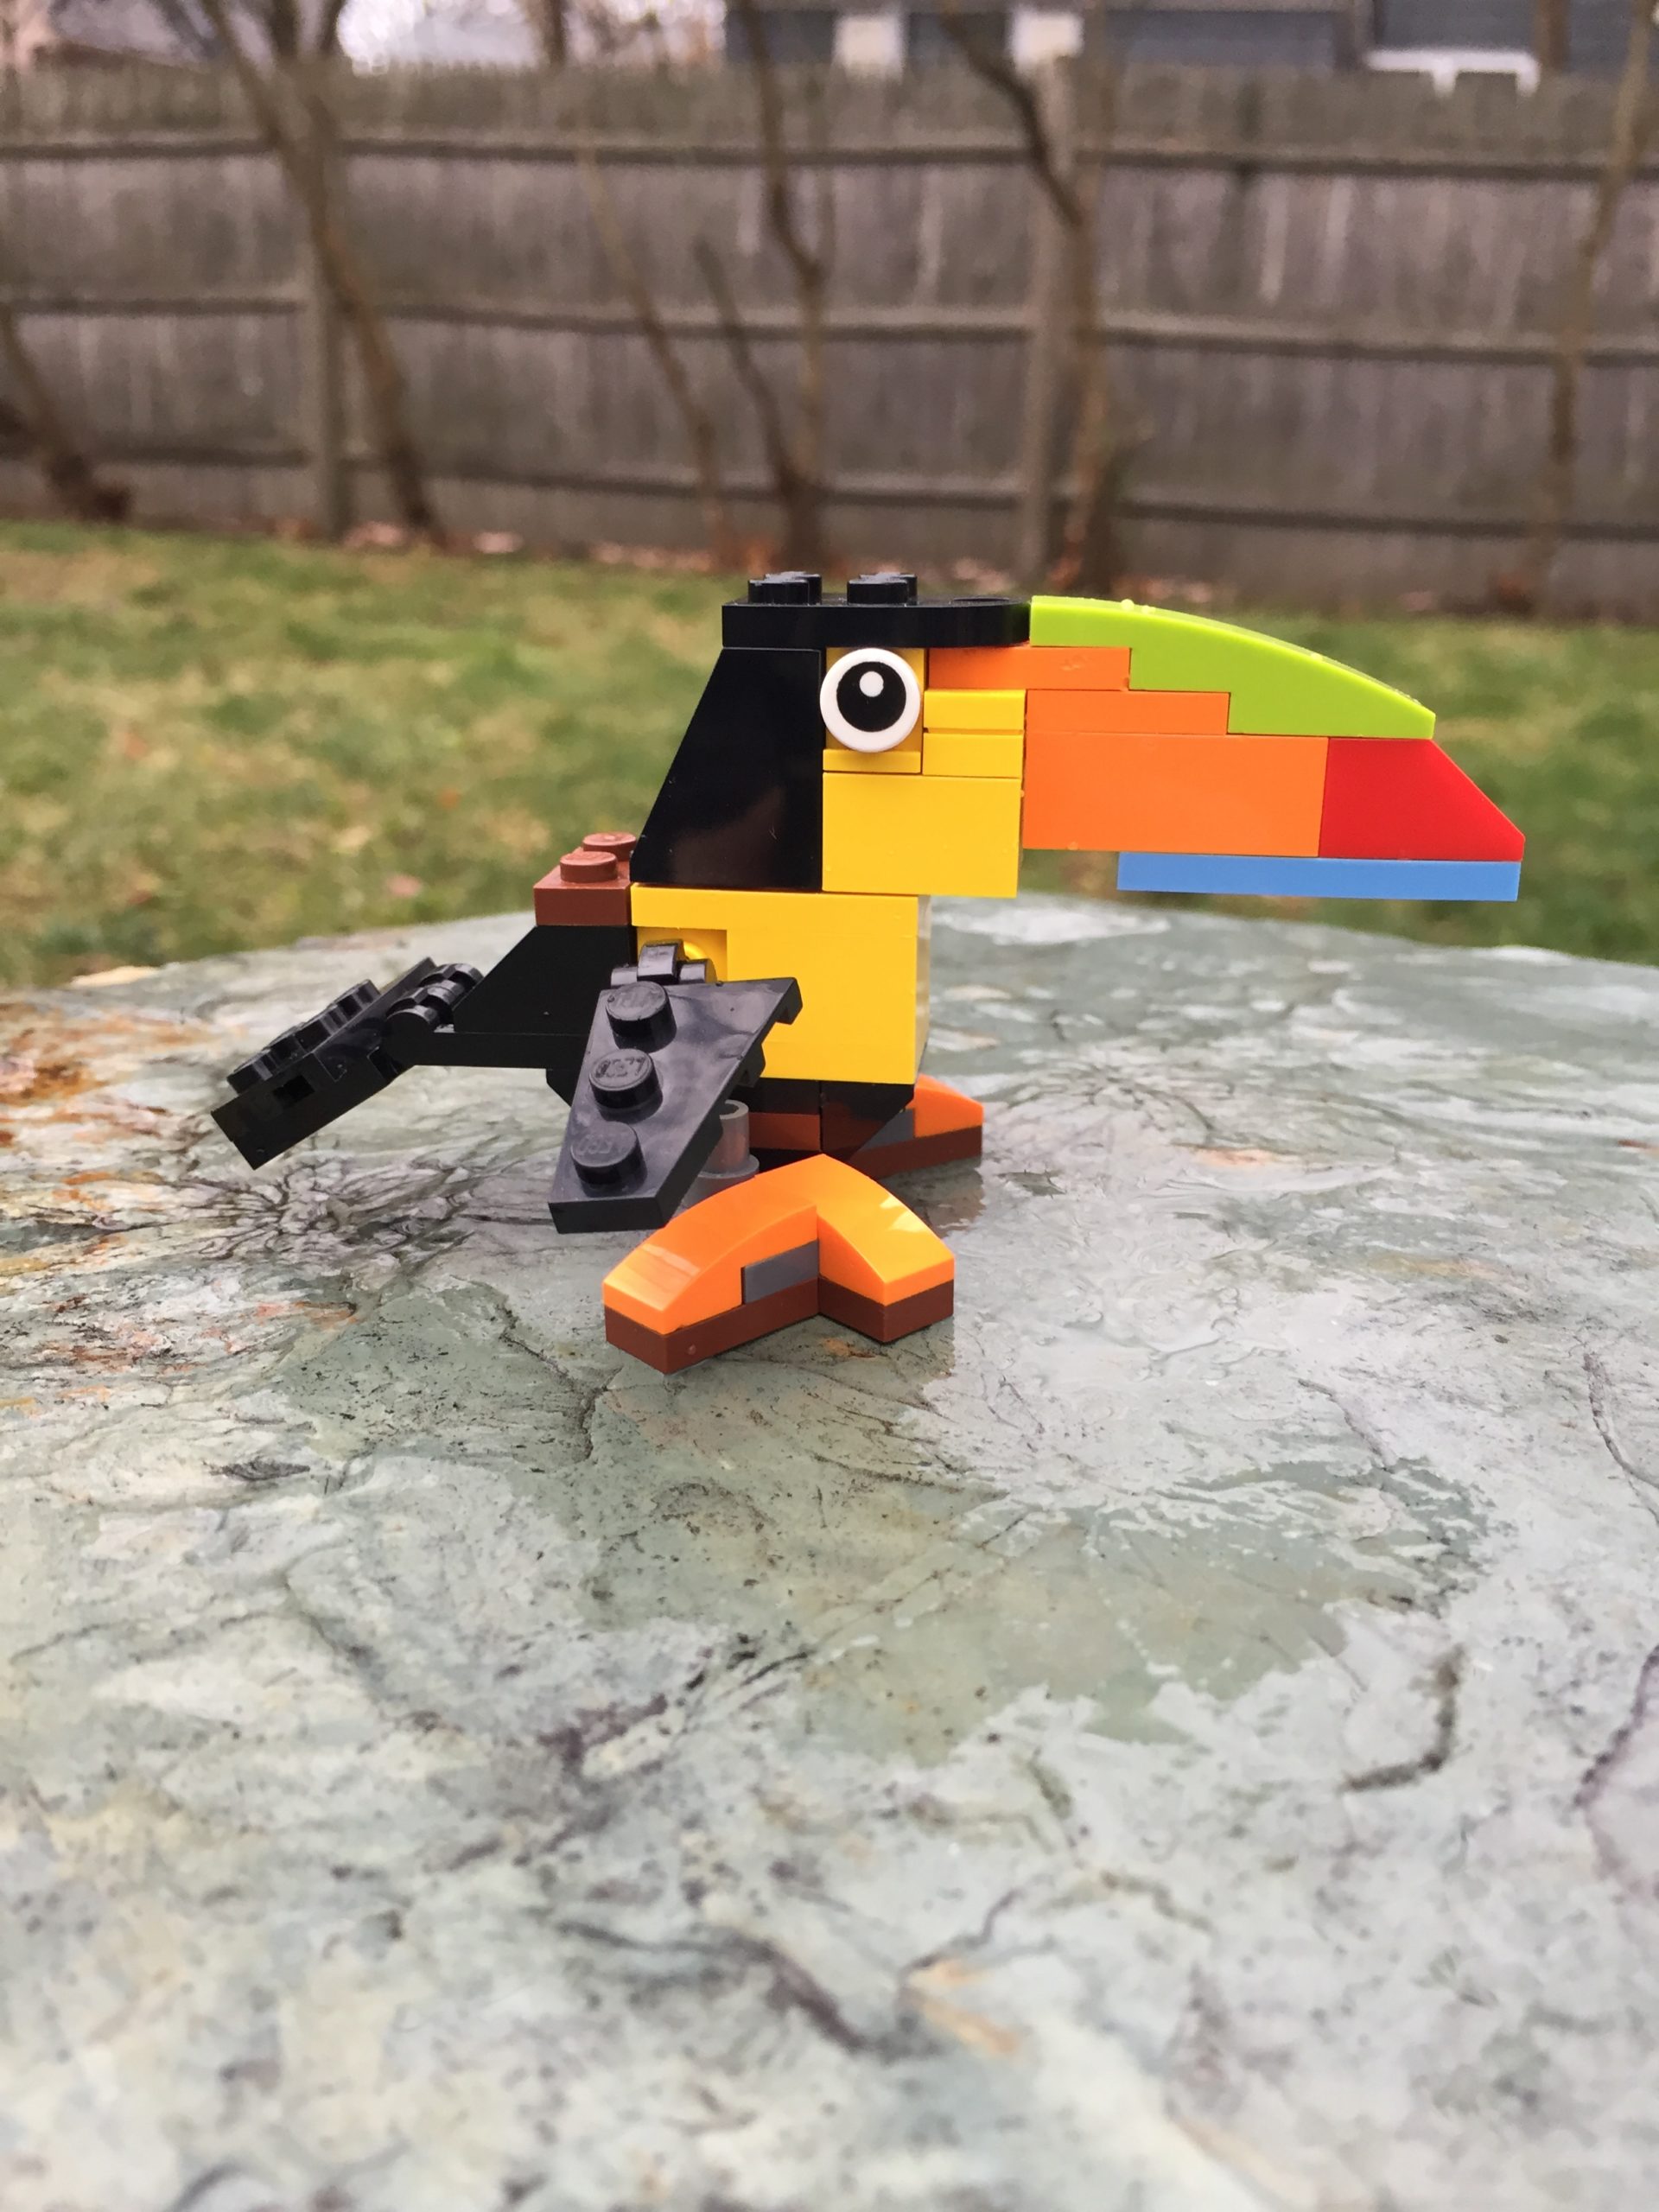 A toucan made of LEGOs